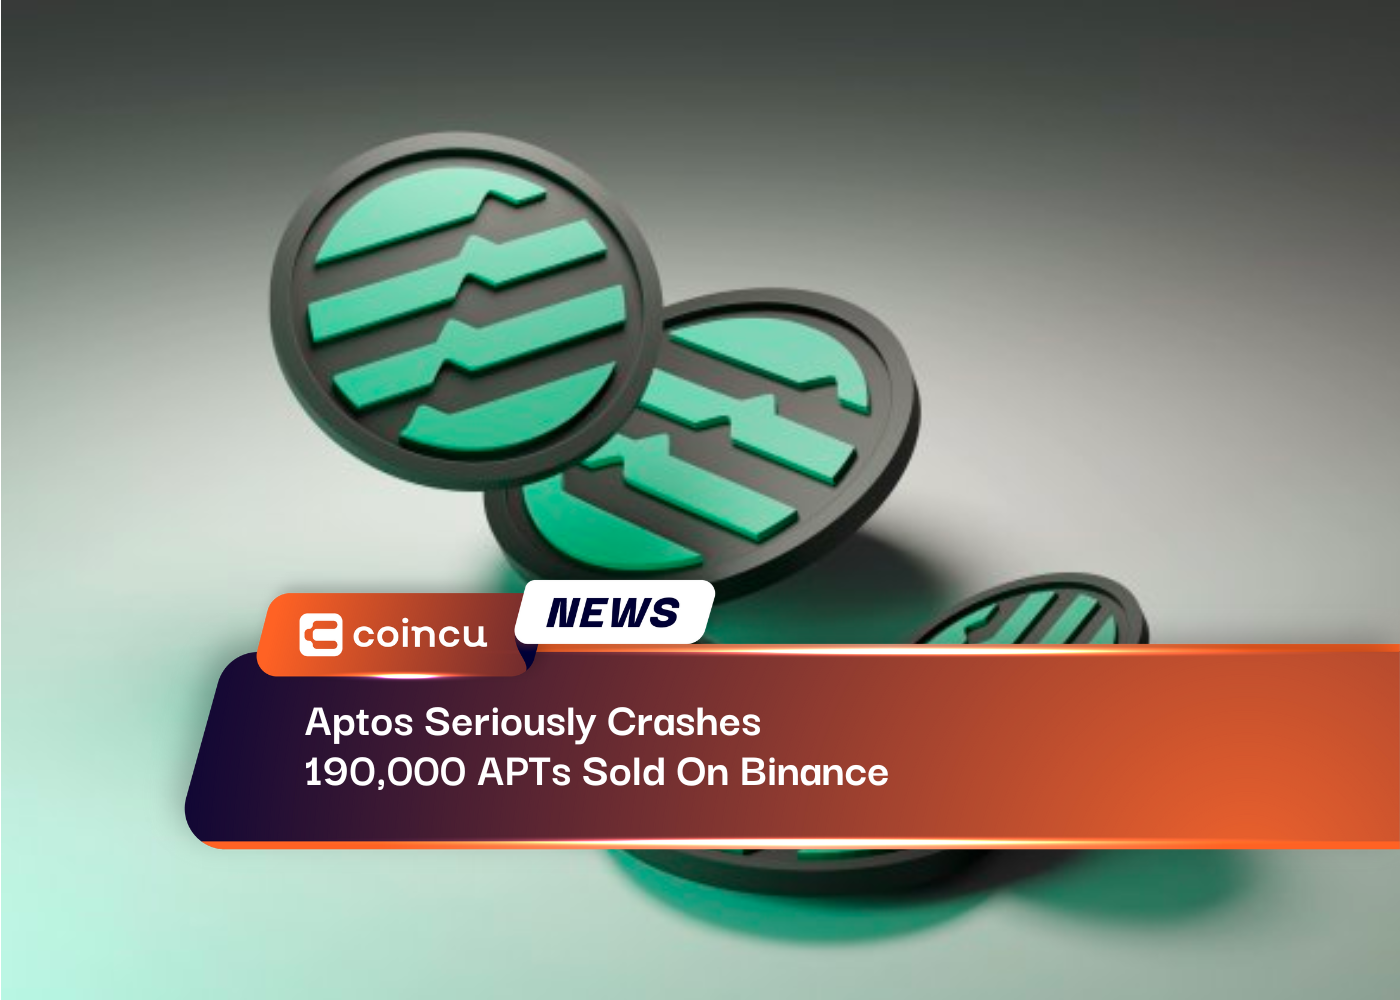 Aptos stürzt 190,000 auf Binance verkaufte APTs ernsthaft ab